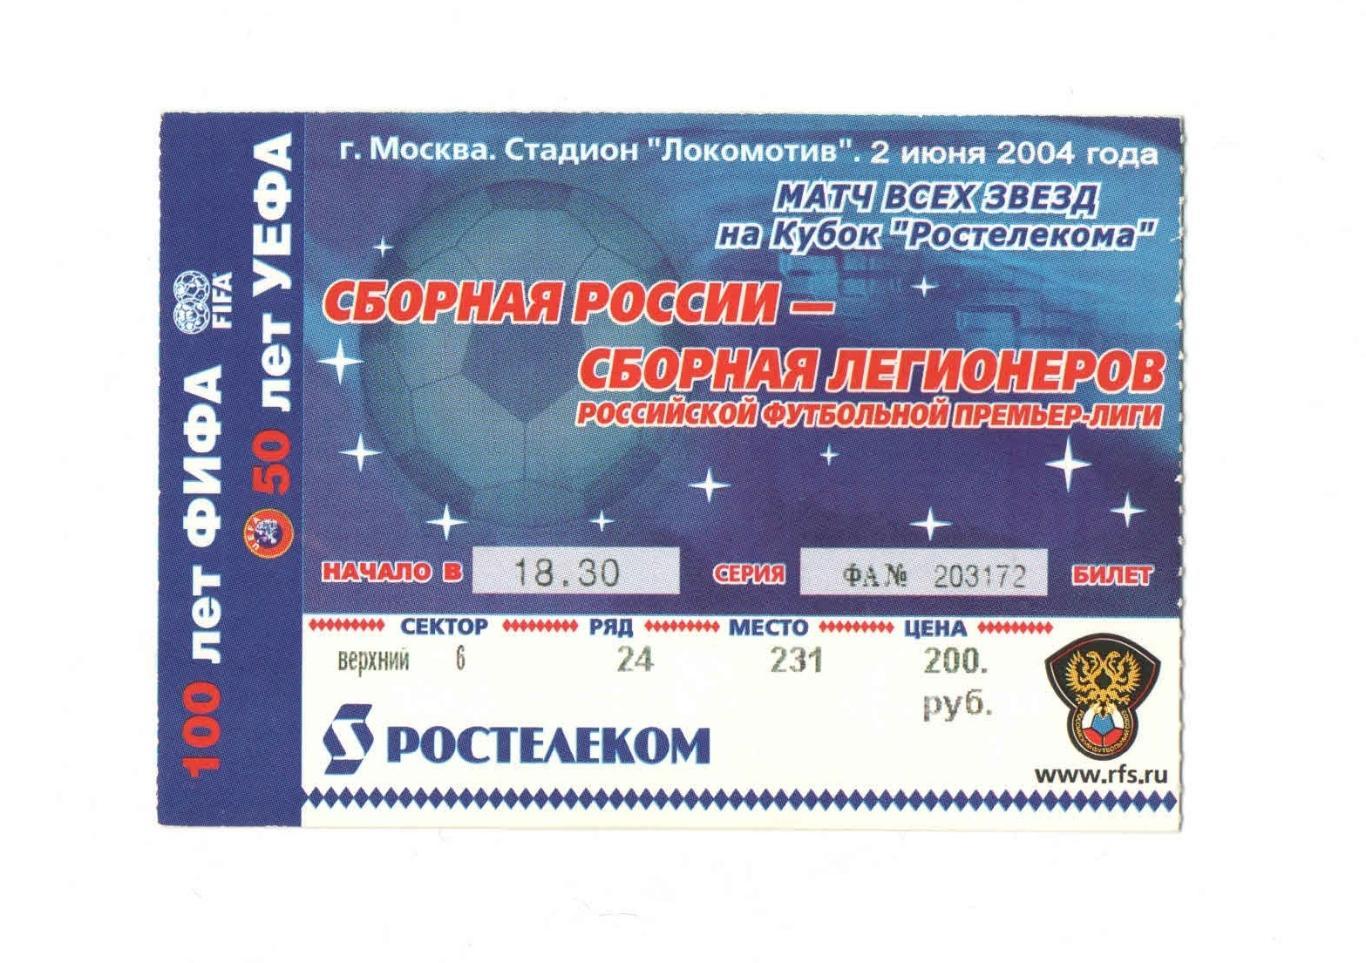 Сборная России - Сборная Легионеров 2004